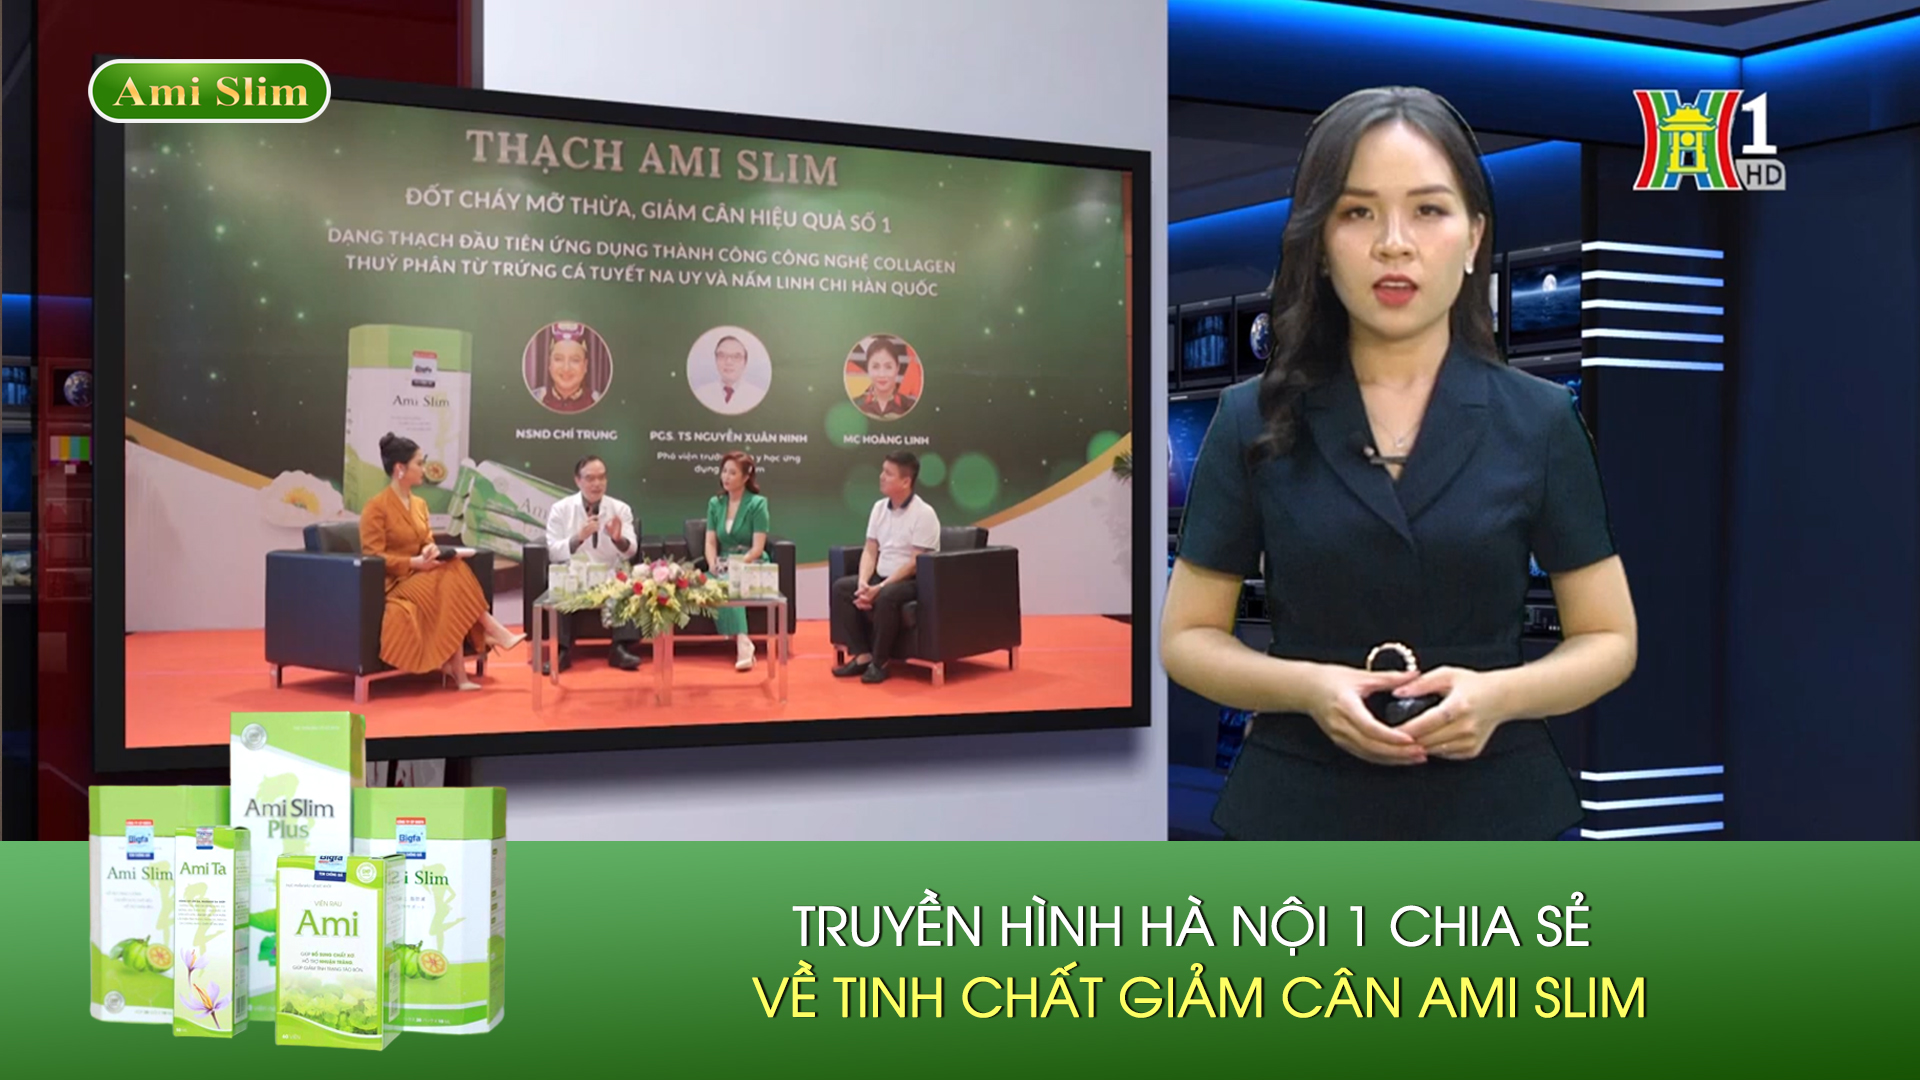 Kênh HN 1 - Truyền hình Hà Nội 1 nói gì về tinh chất giảm cân Ami Slim